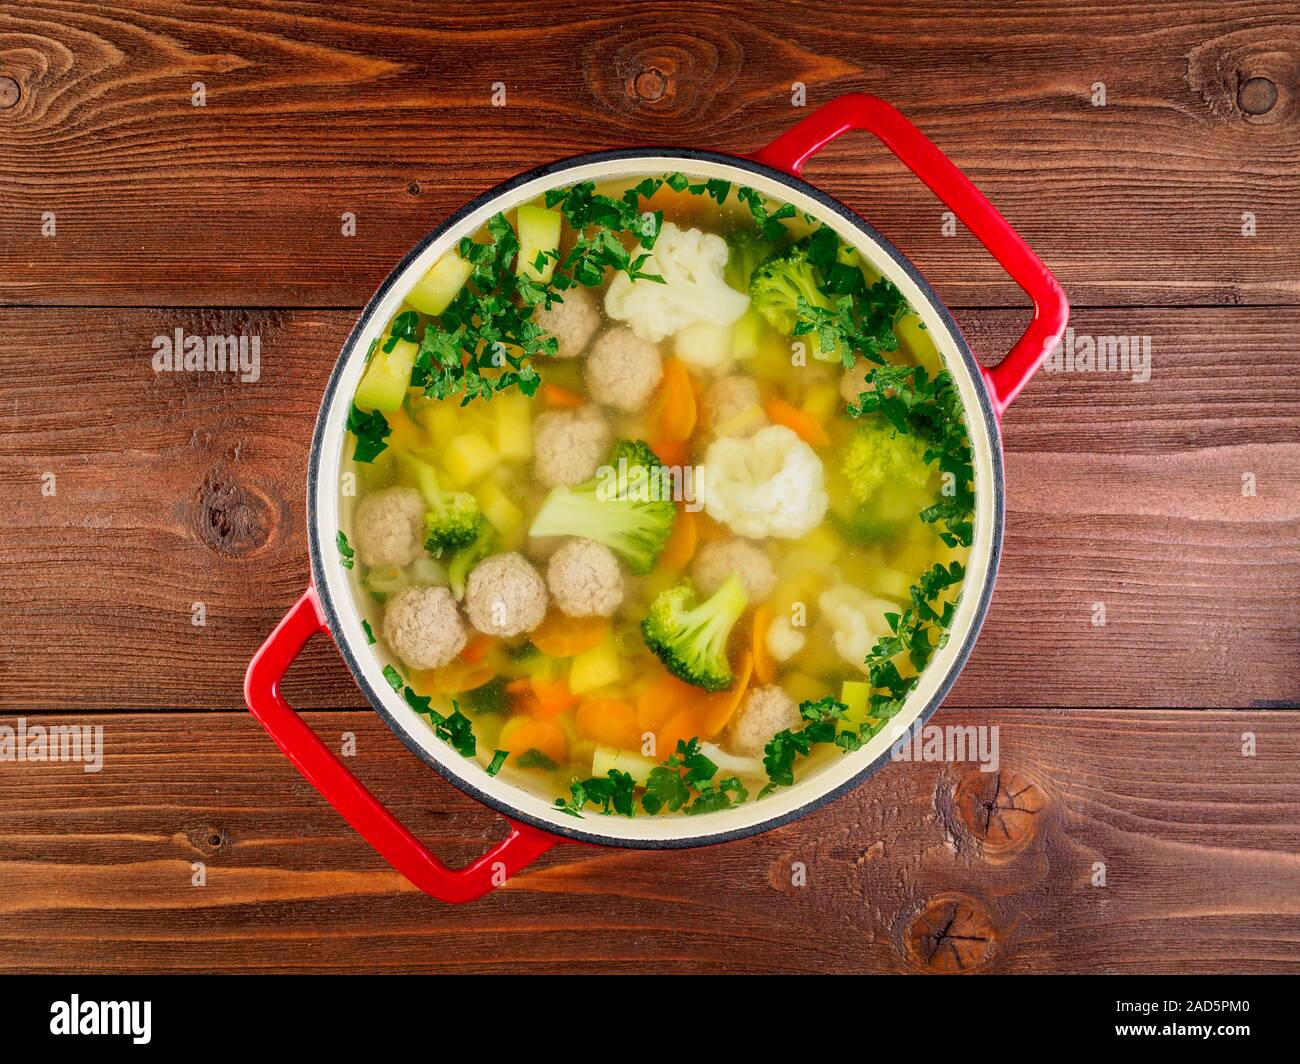 Große Metal cast rot Pan mit köstlichen heißen Suppe mit Gemüse und Frikadellen, Blumenkohl, Brokkoli, Möhren, Paprika, Kartoffeln, gesunde Diät essen. Br Stockfoto